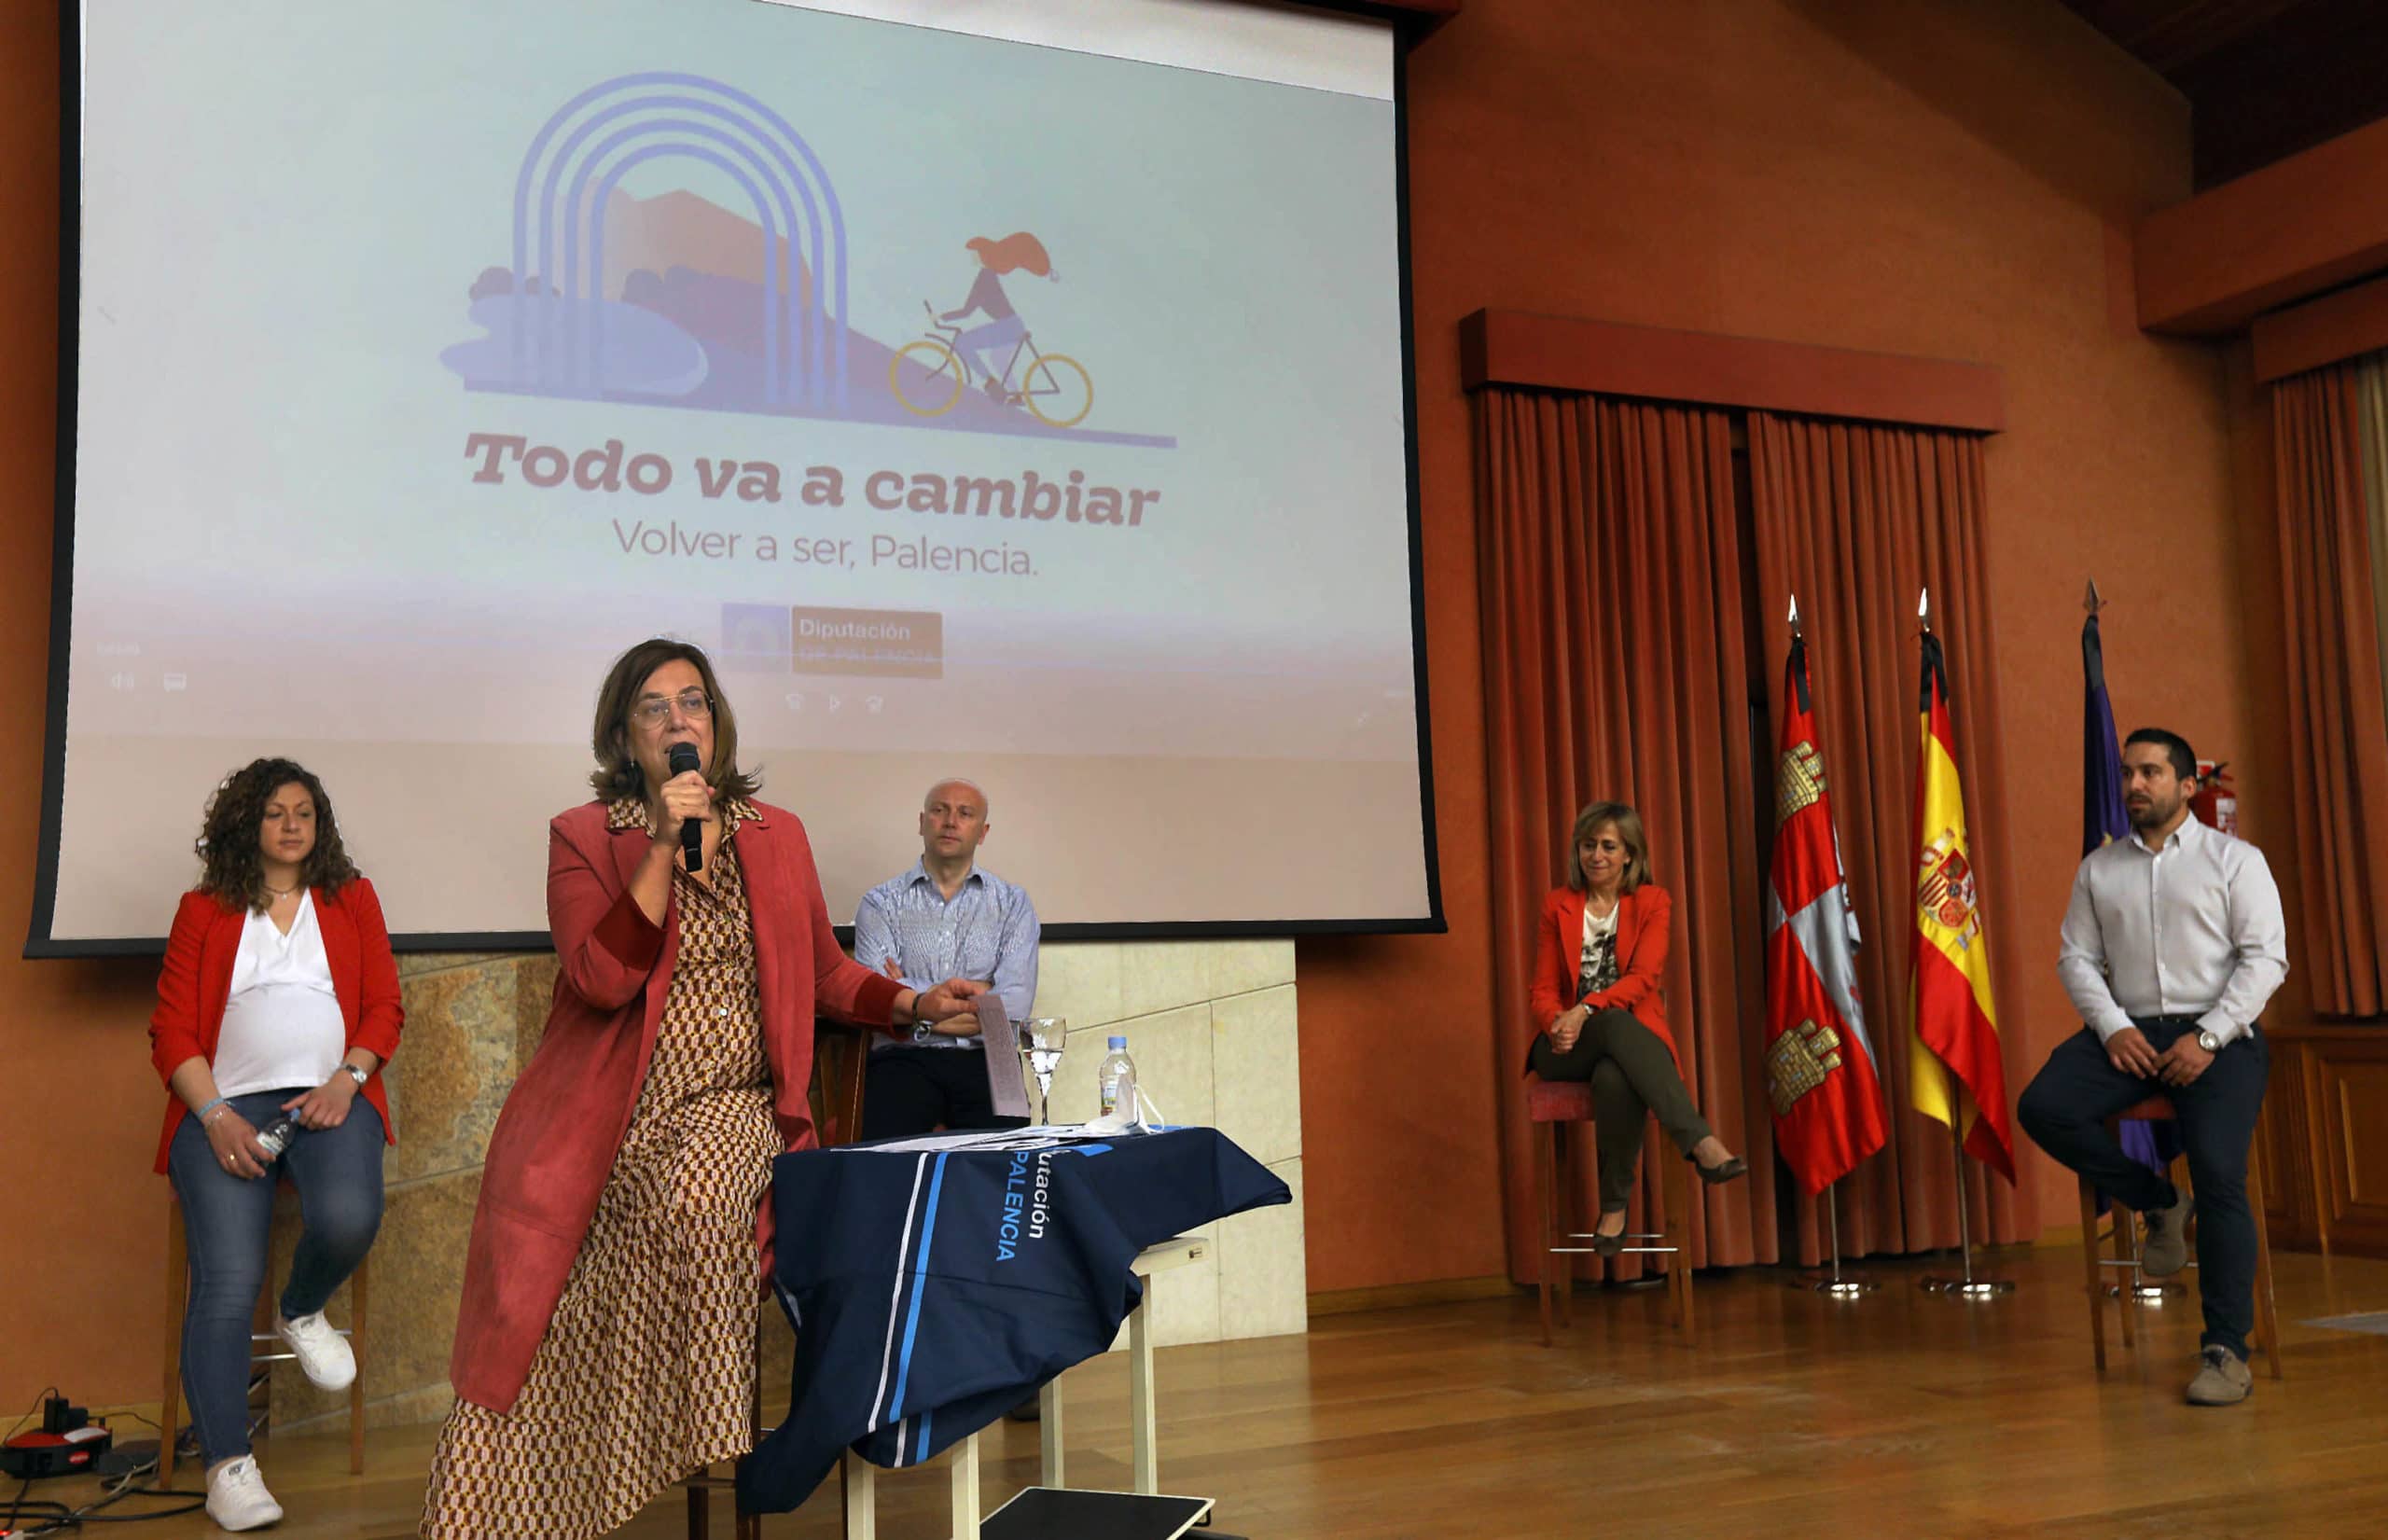 La Diputación de Palencia lanza la campaña ‘Todo va a cambiar’